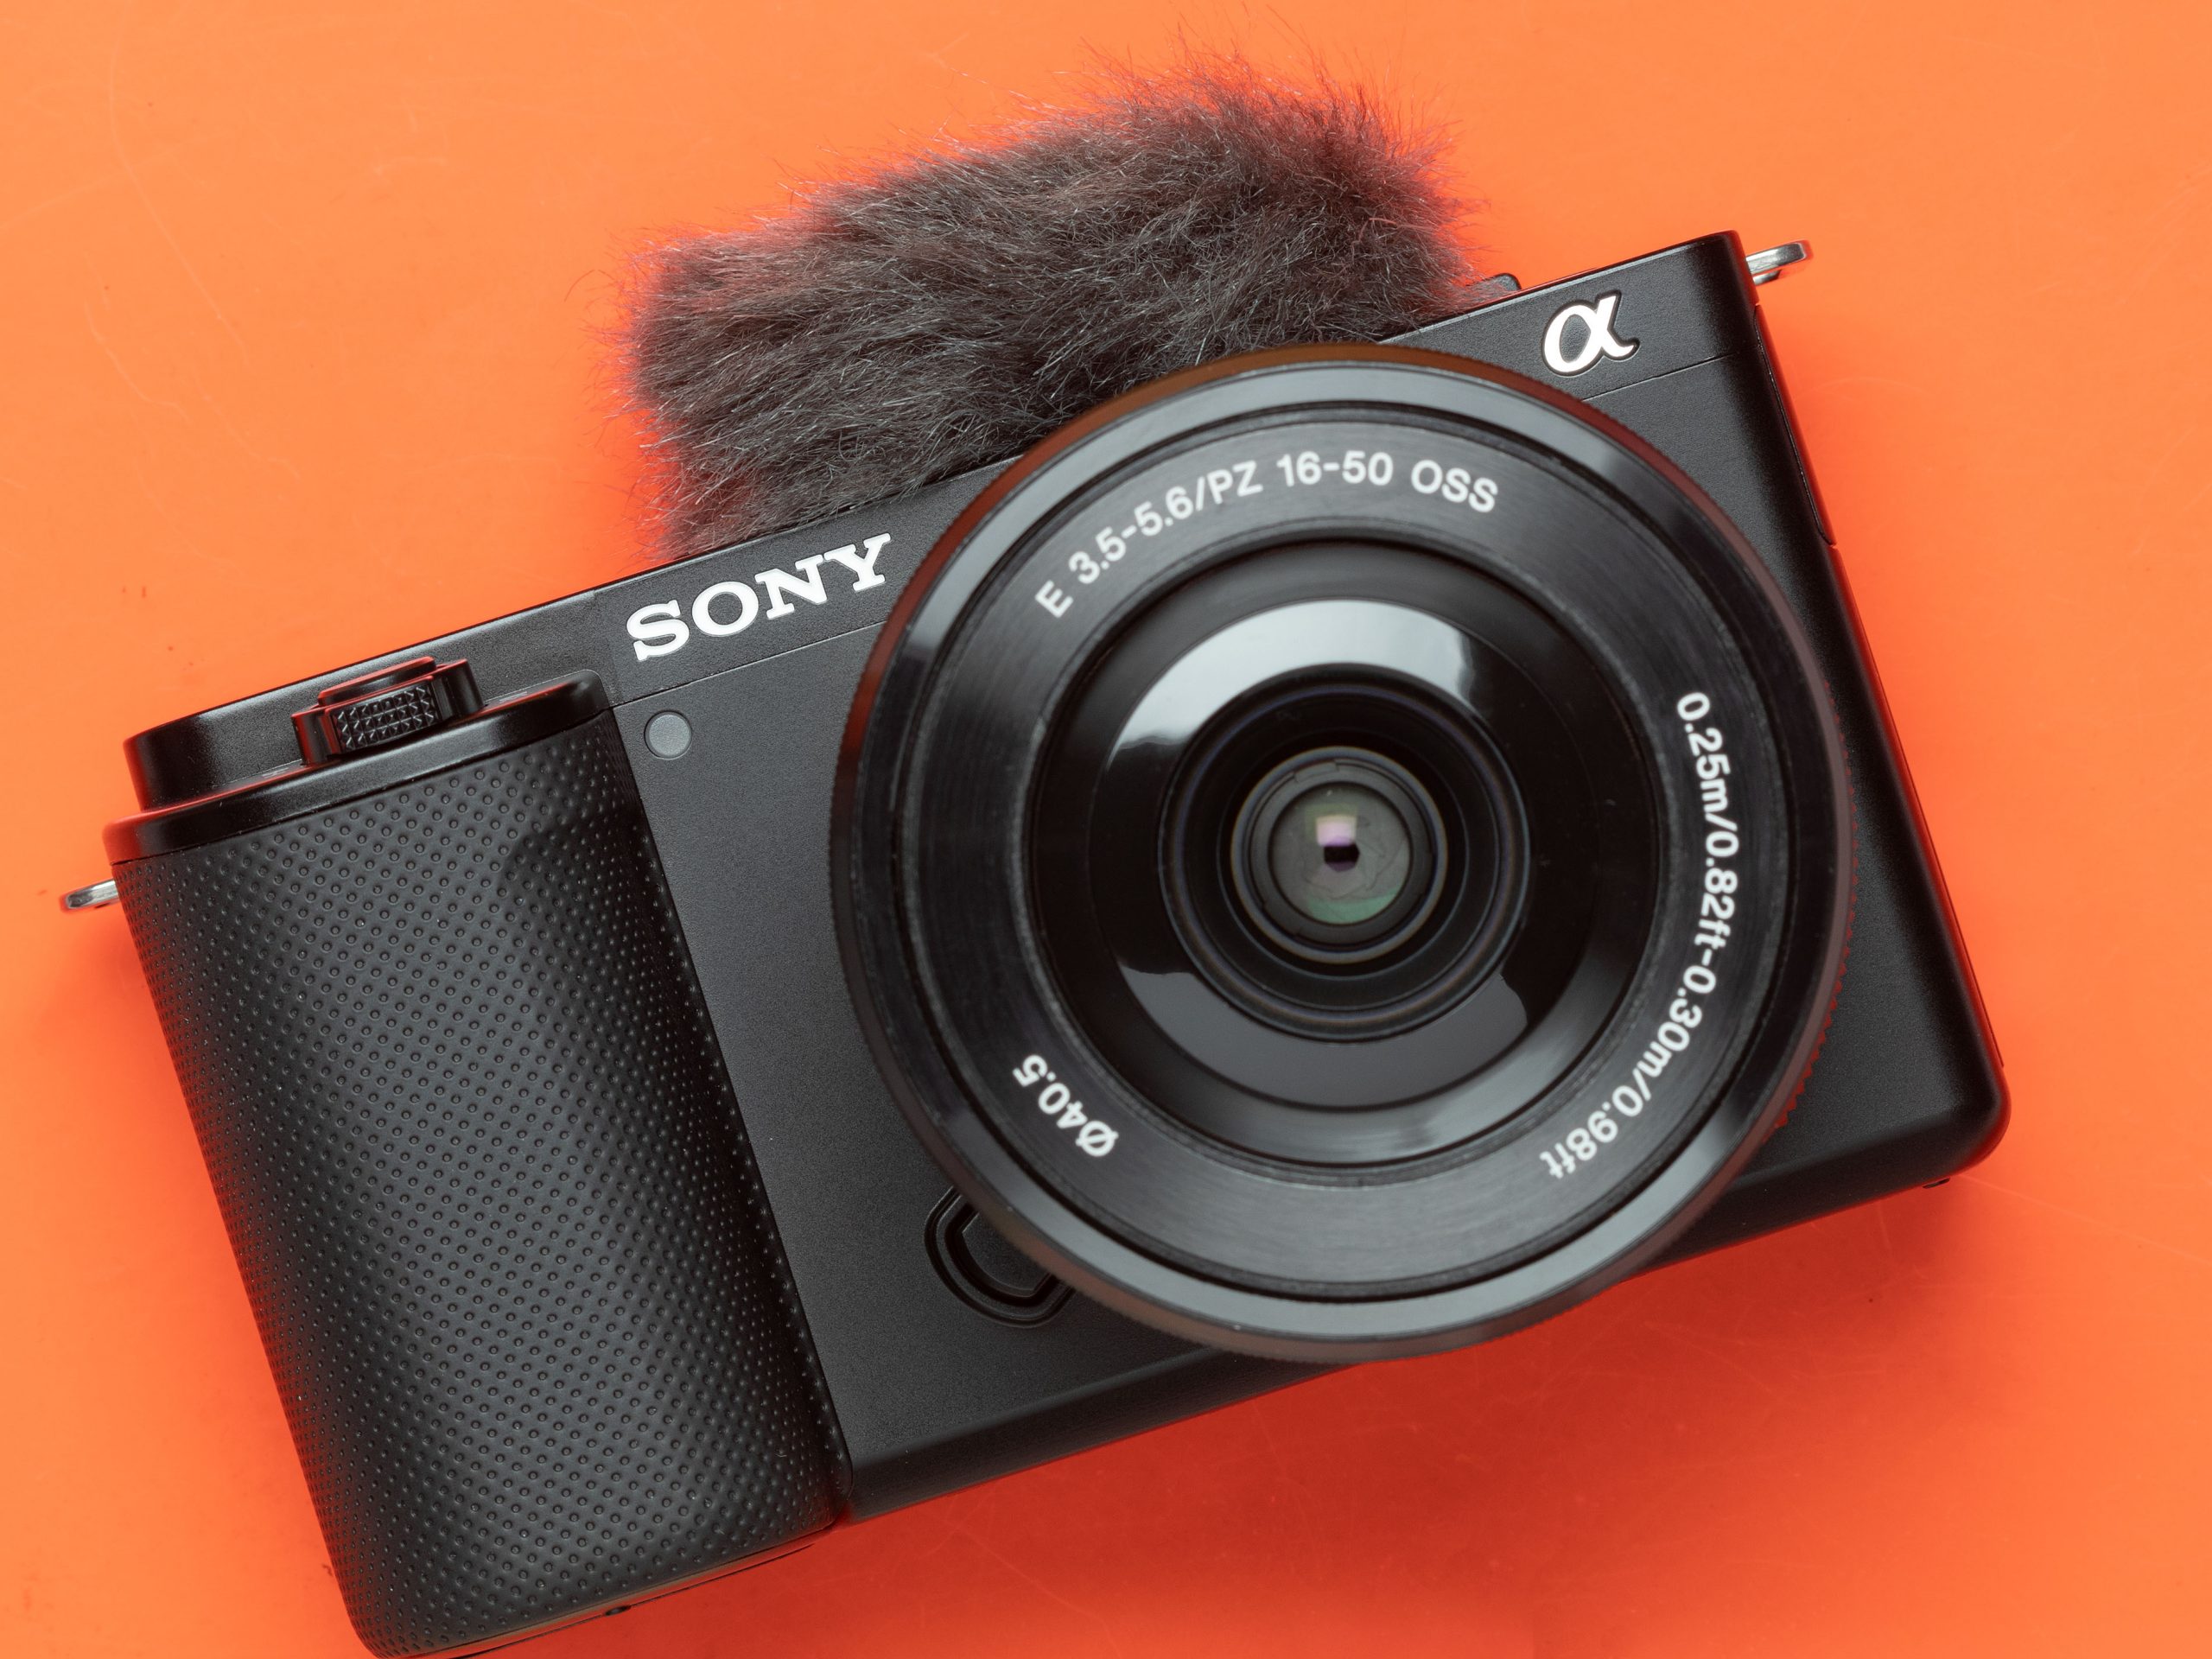 Sony ZV-E10 là chiếc máy ảnh Alpha APS-C dành cho người dùng vlogger